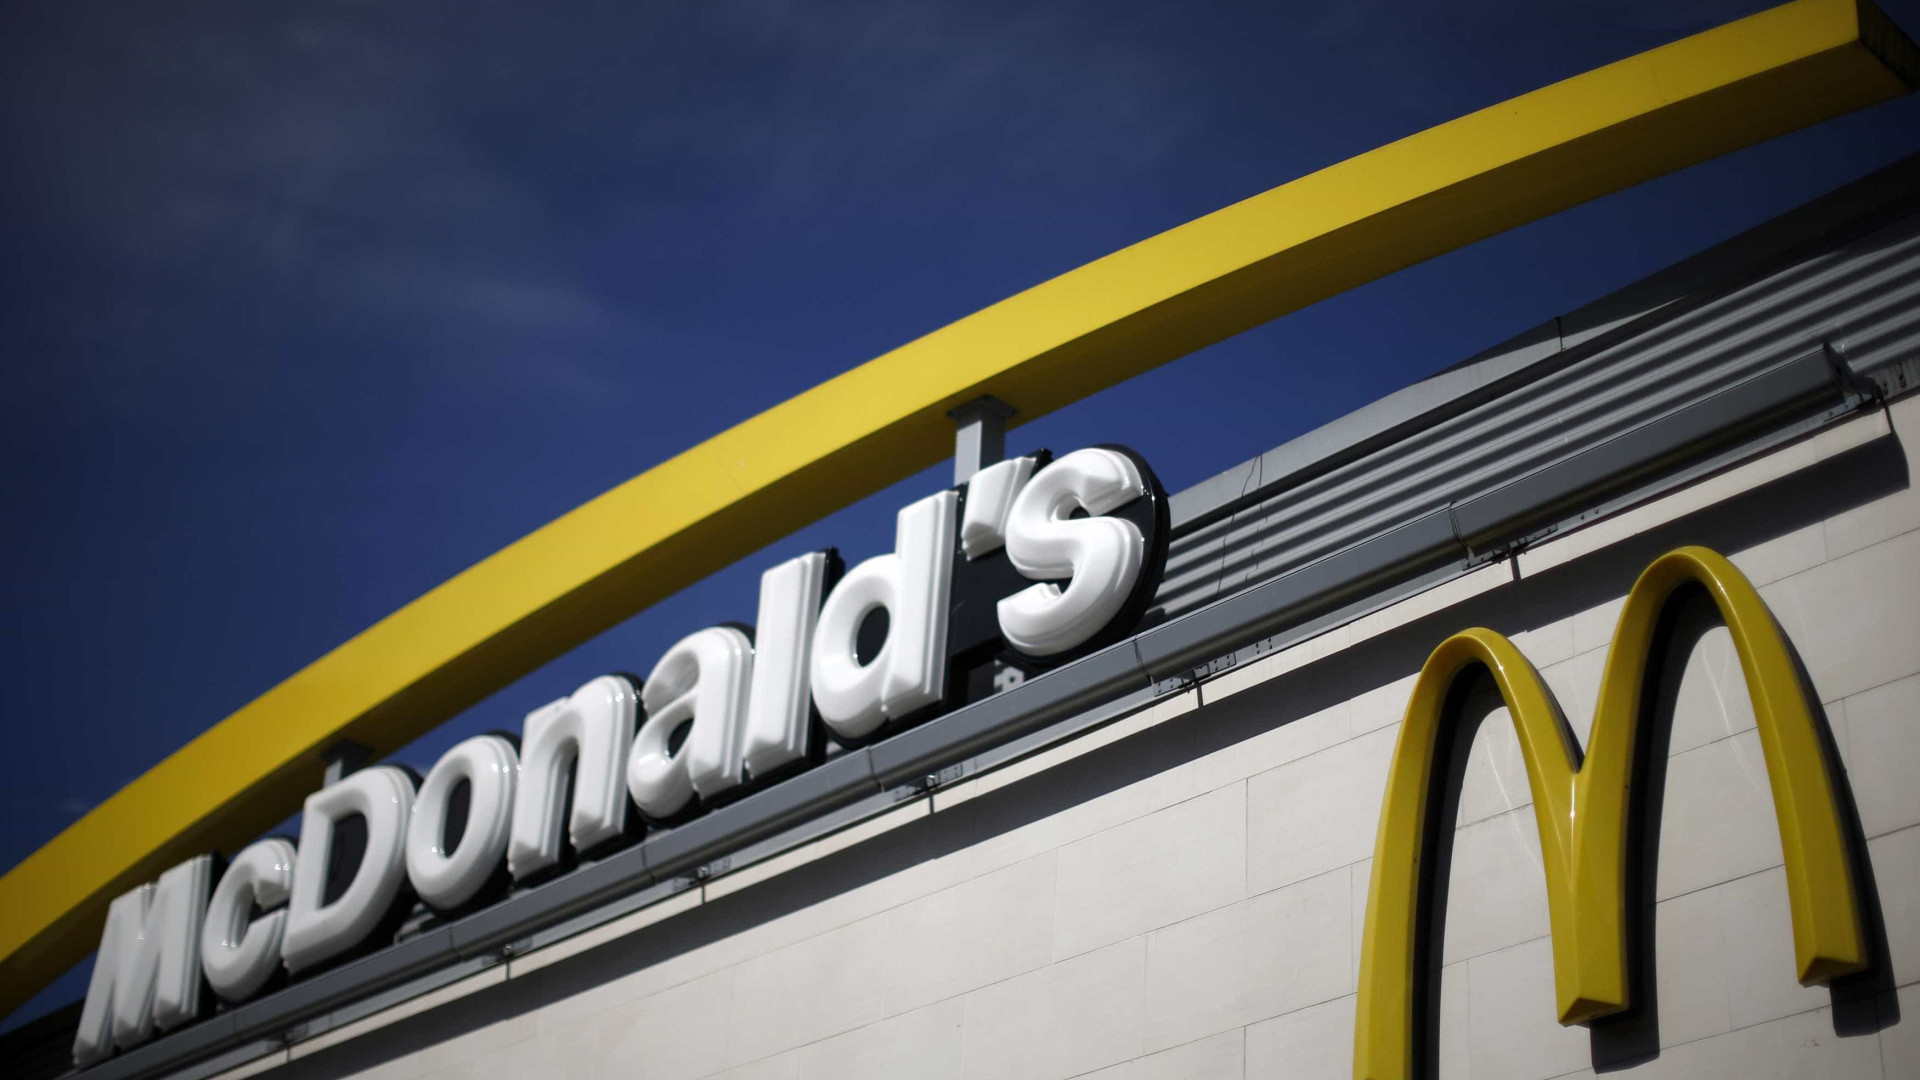 McDonald's prevê acelerar expansão e abrir 20% mais vagas em 2019